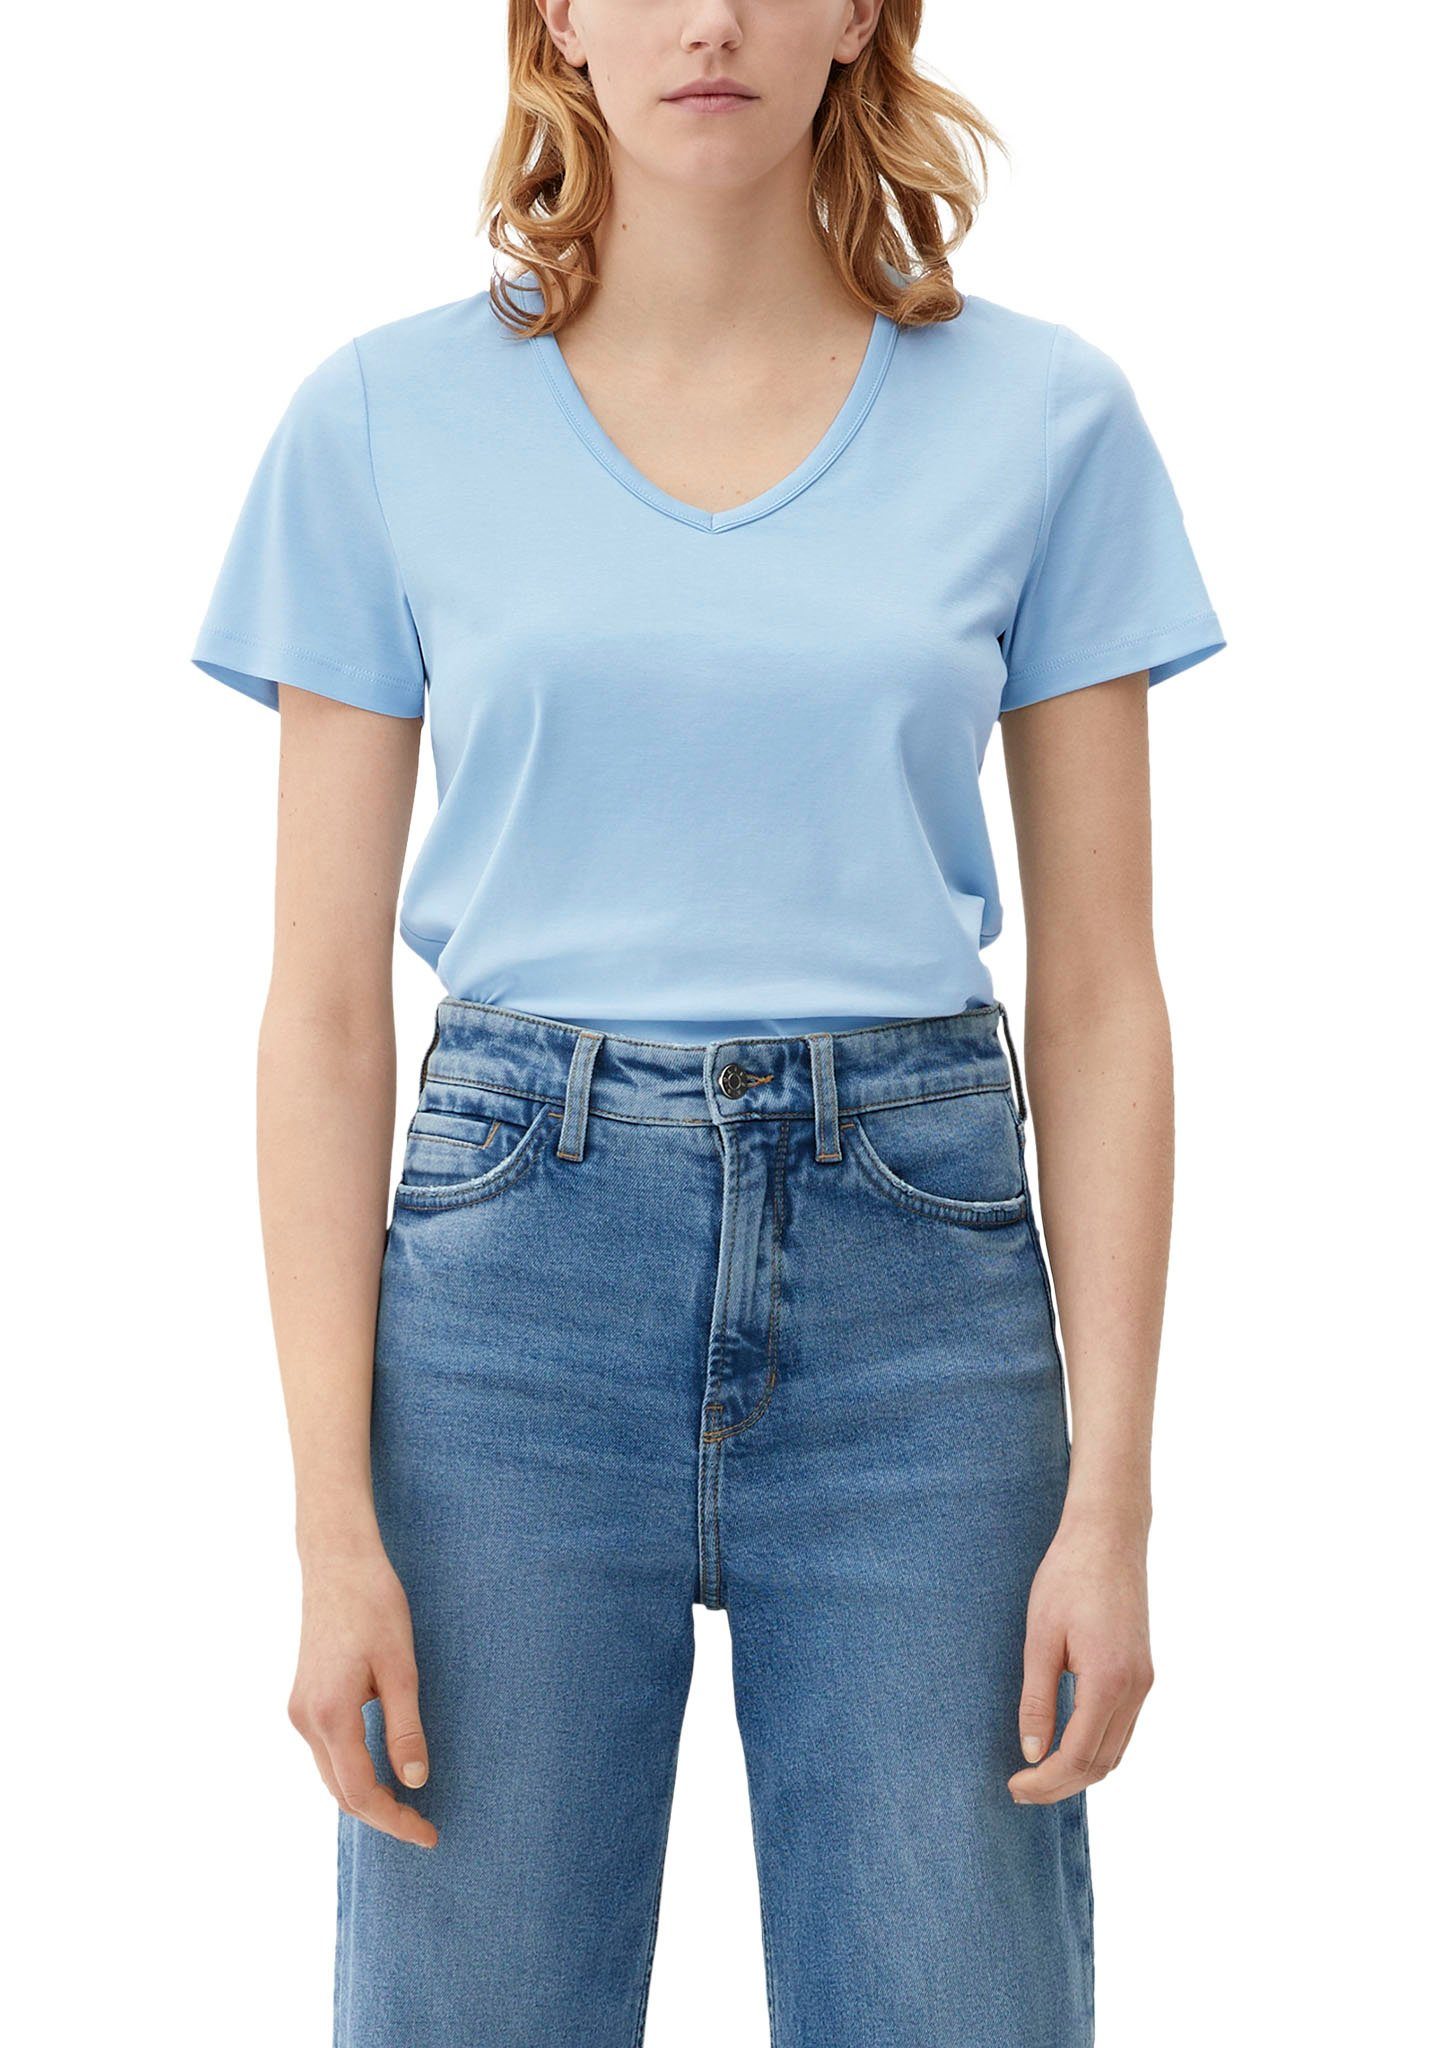 Exklusiver Verkauf s.Oliver T-Shirt hellblau